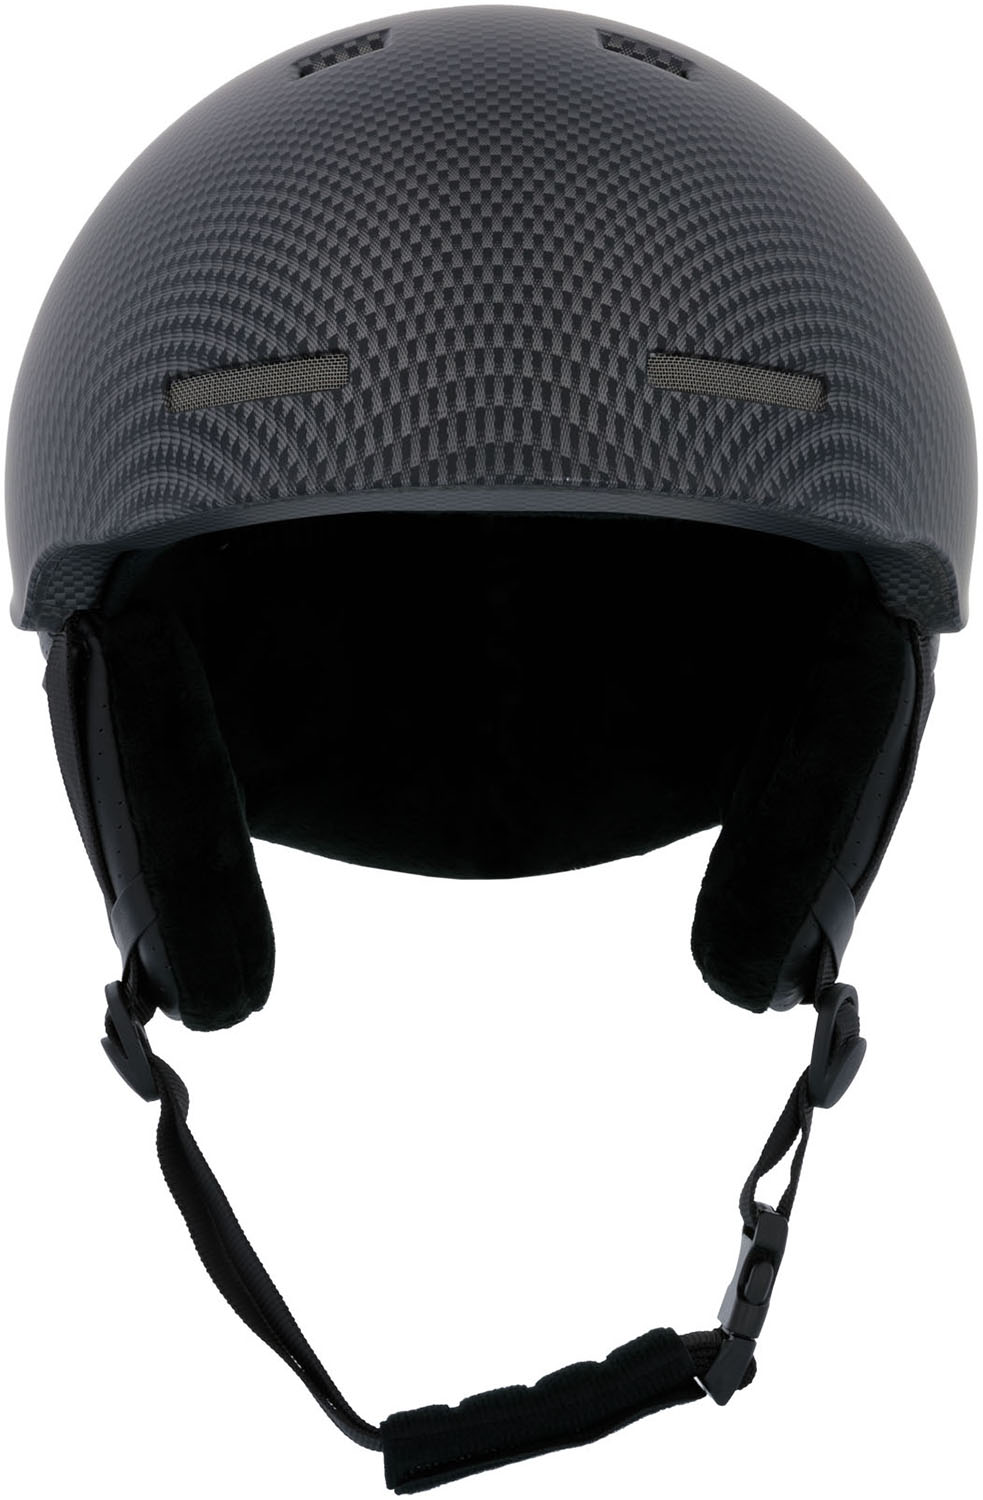 Шлем ProSurf Carbon Black